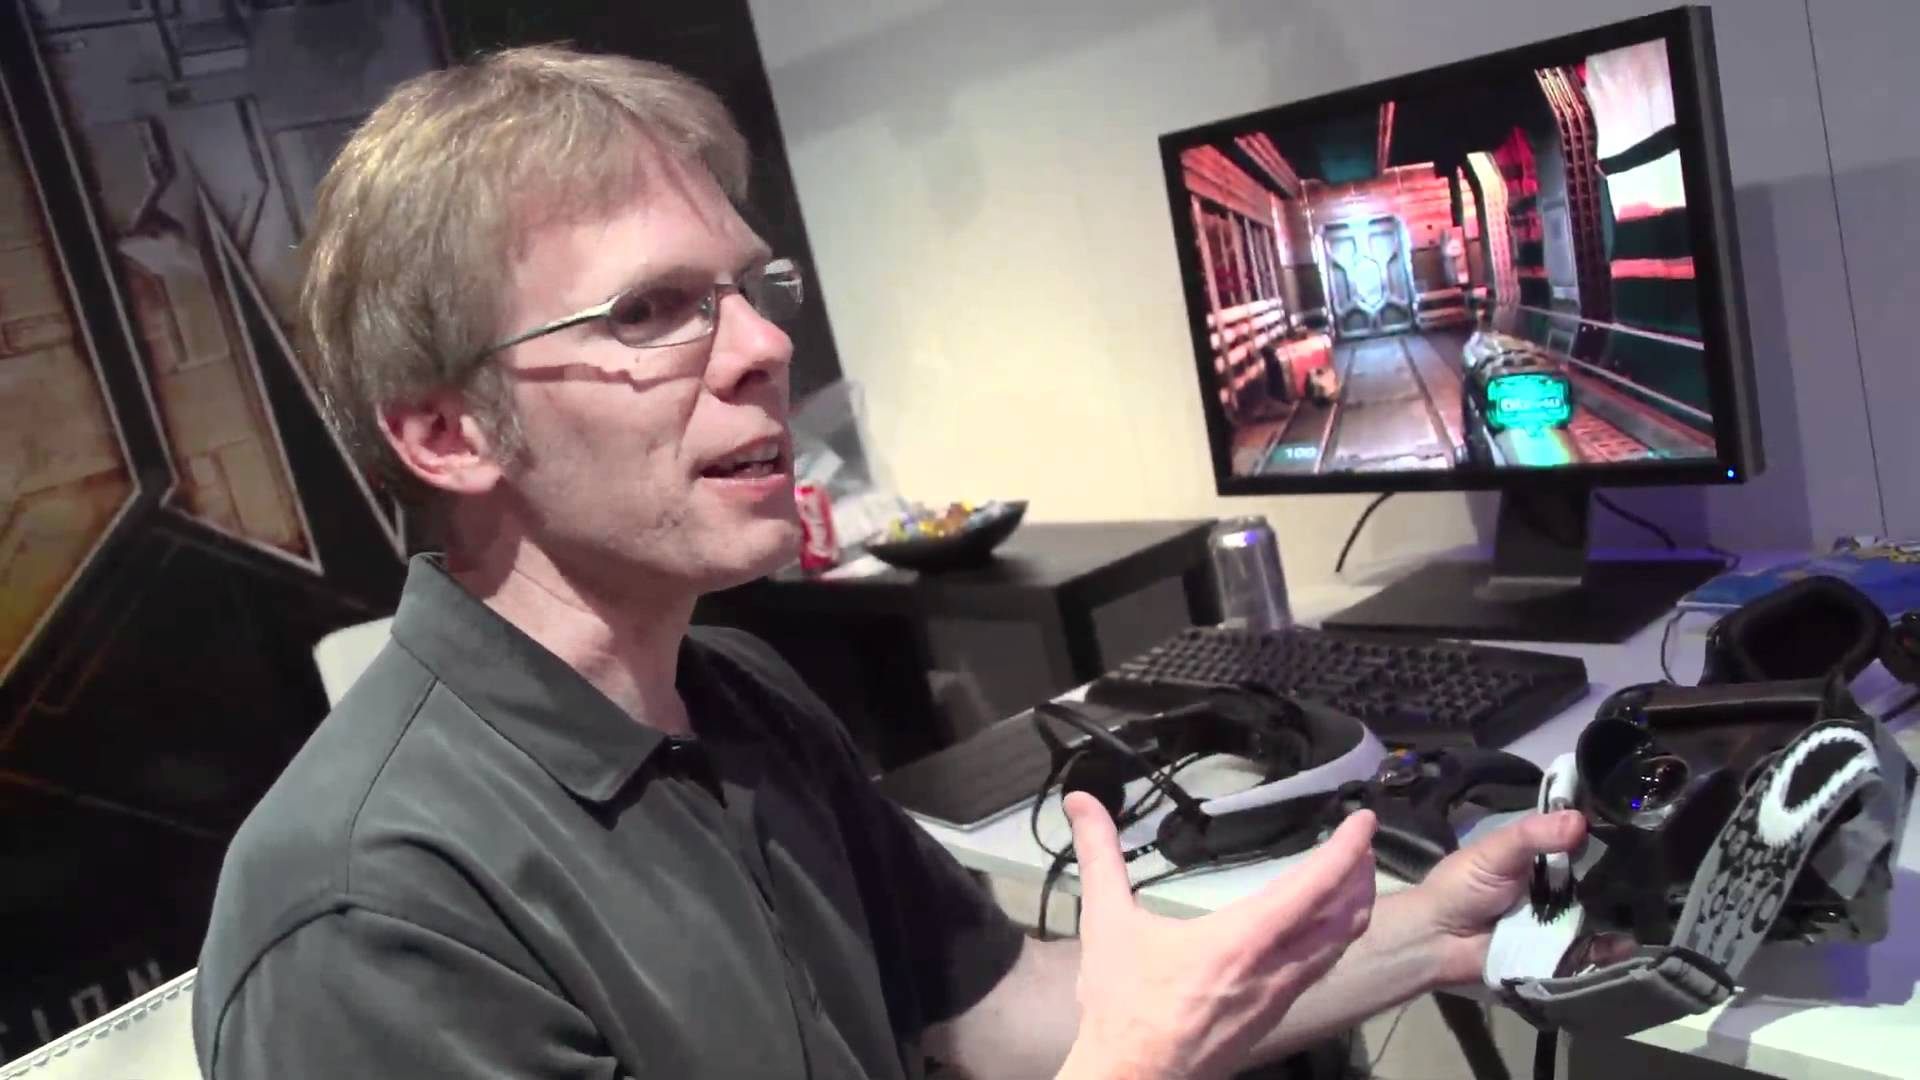 John Carmack już od dawna fascynował się wirtualną rzeczywistością - Zenimax oskarża Johna Carmacka o kradzież technologii VR - wiadomość - 2014-05-02